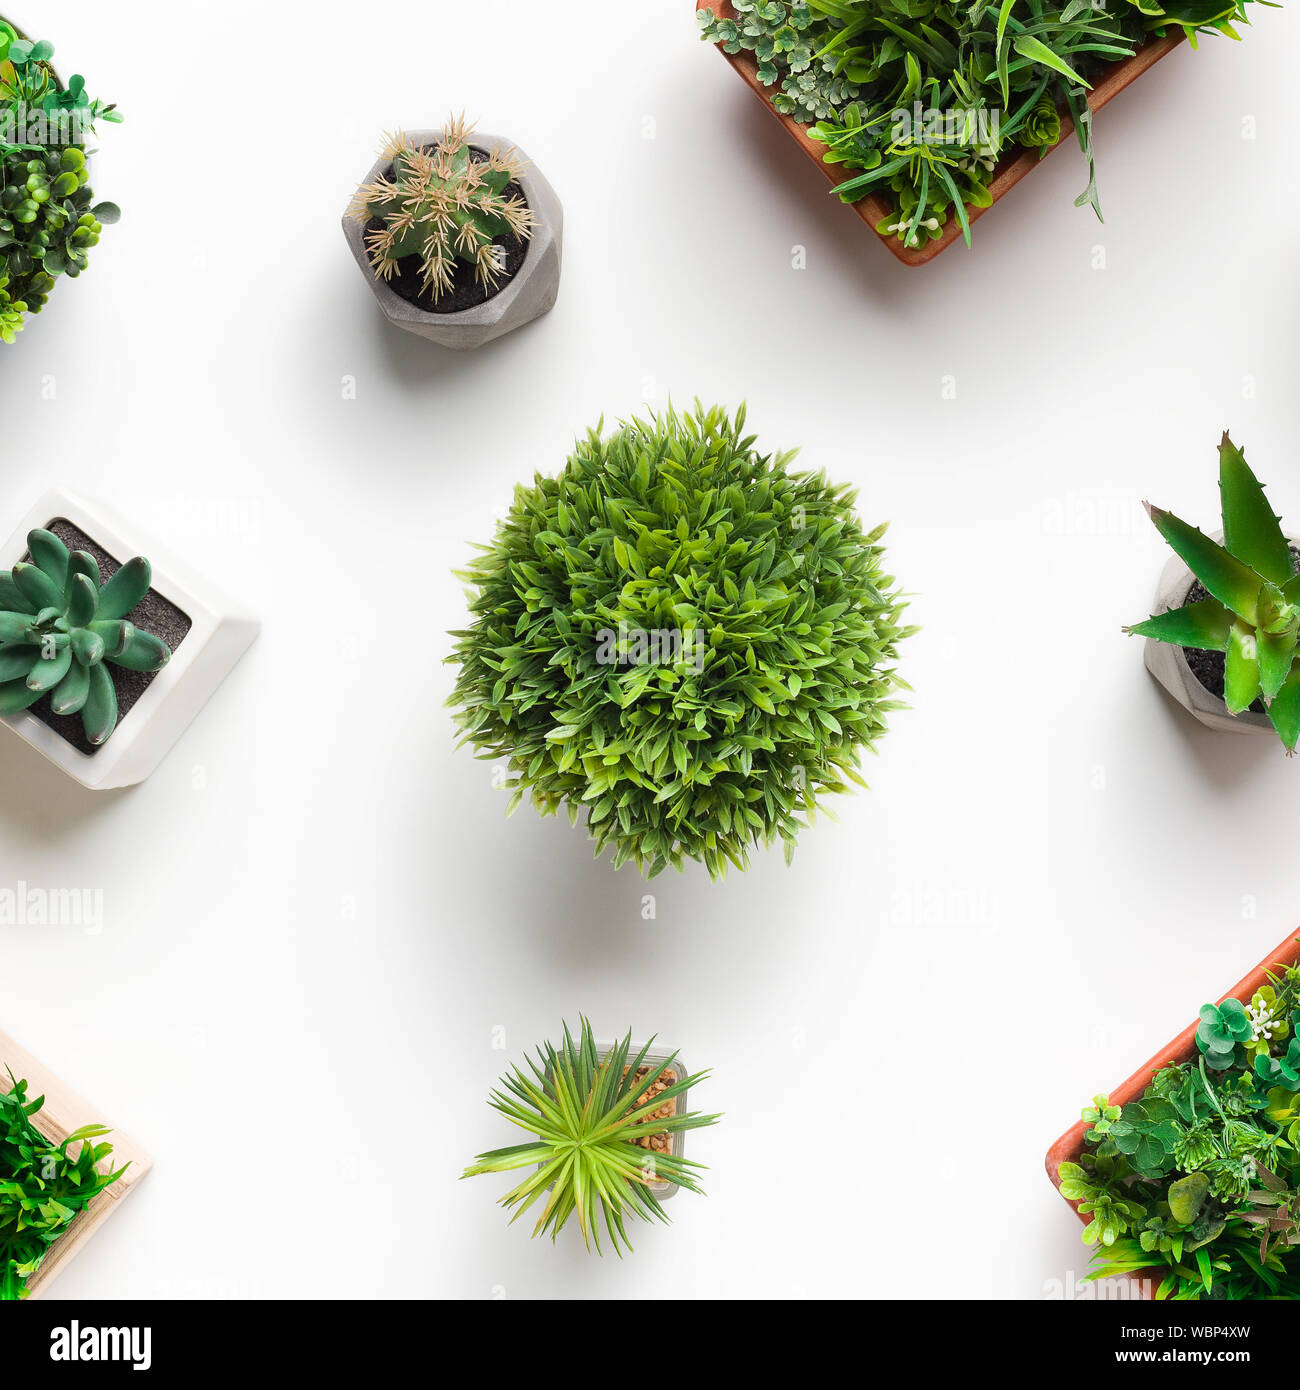 Schéma des cactus et succulentes artificiels, plantes herbacées Banque D'Images